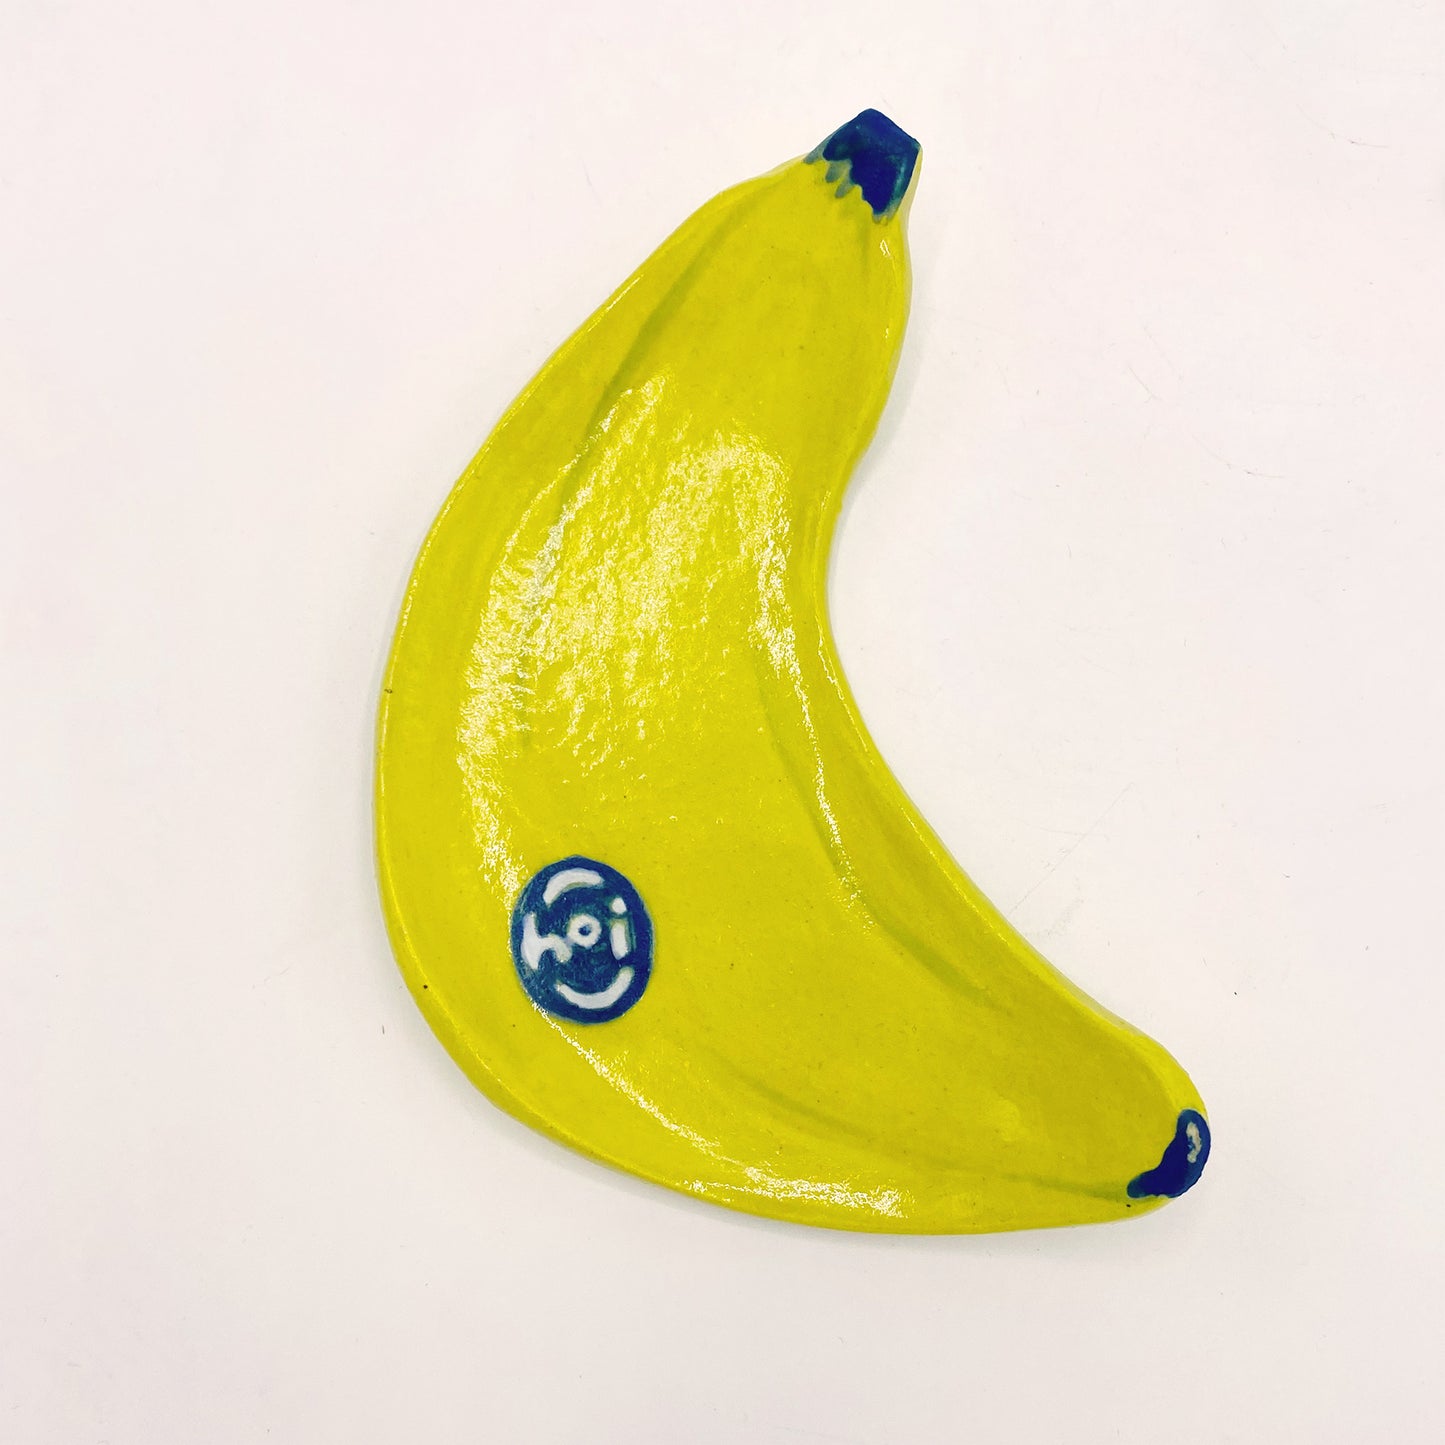 Hoi Banana Plate (single)